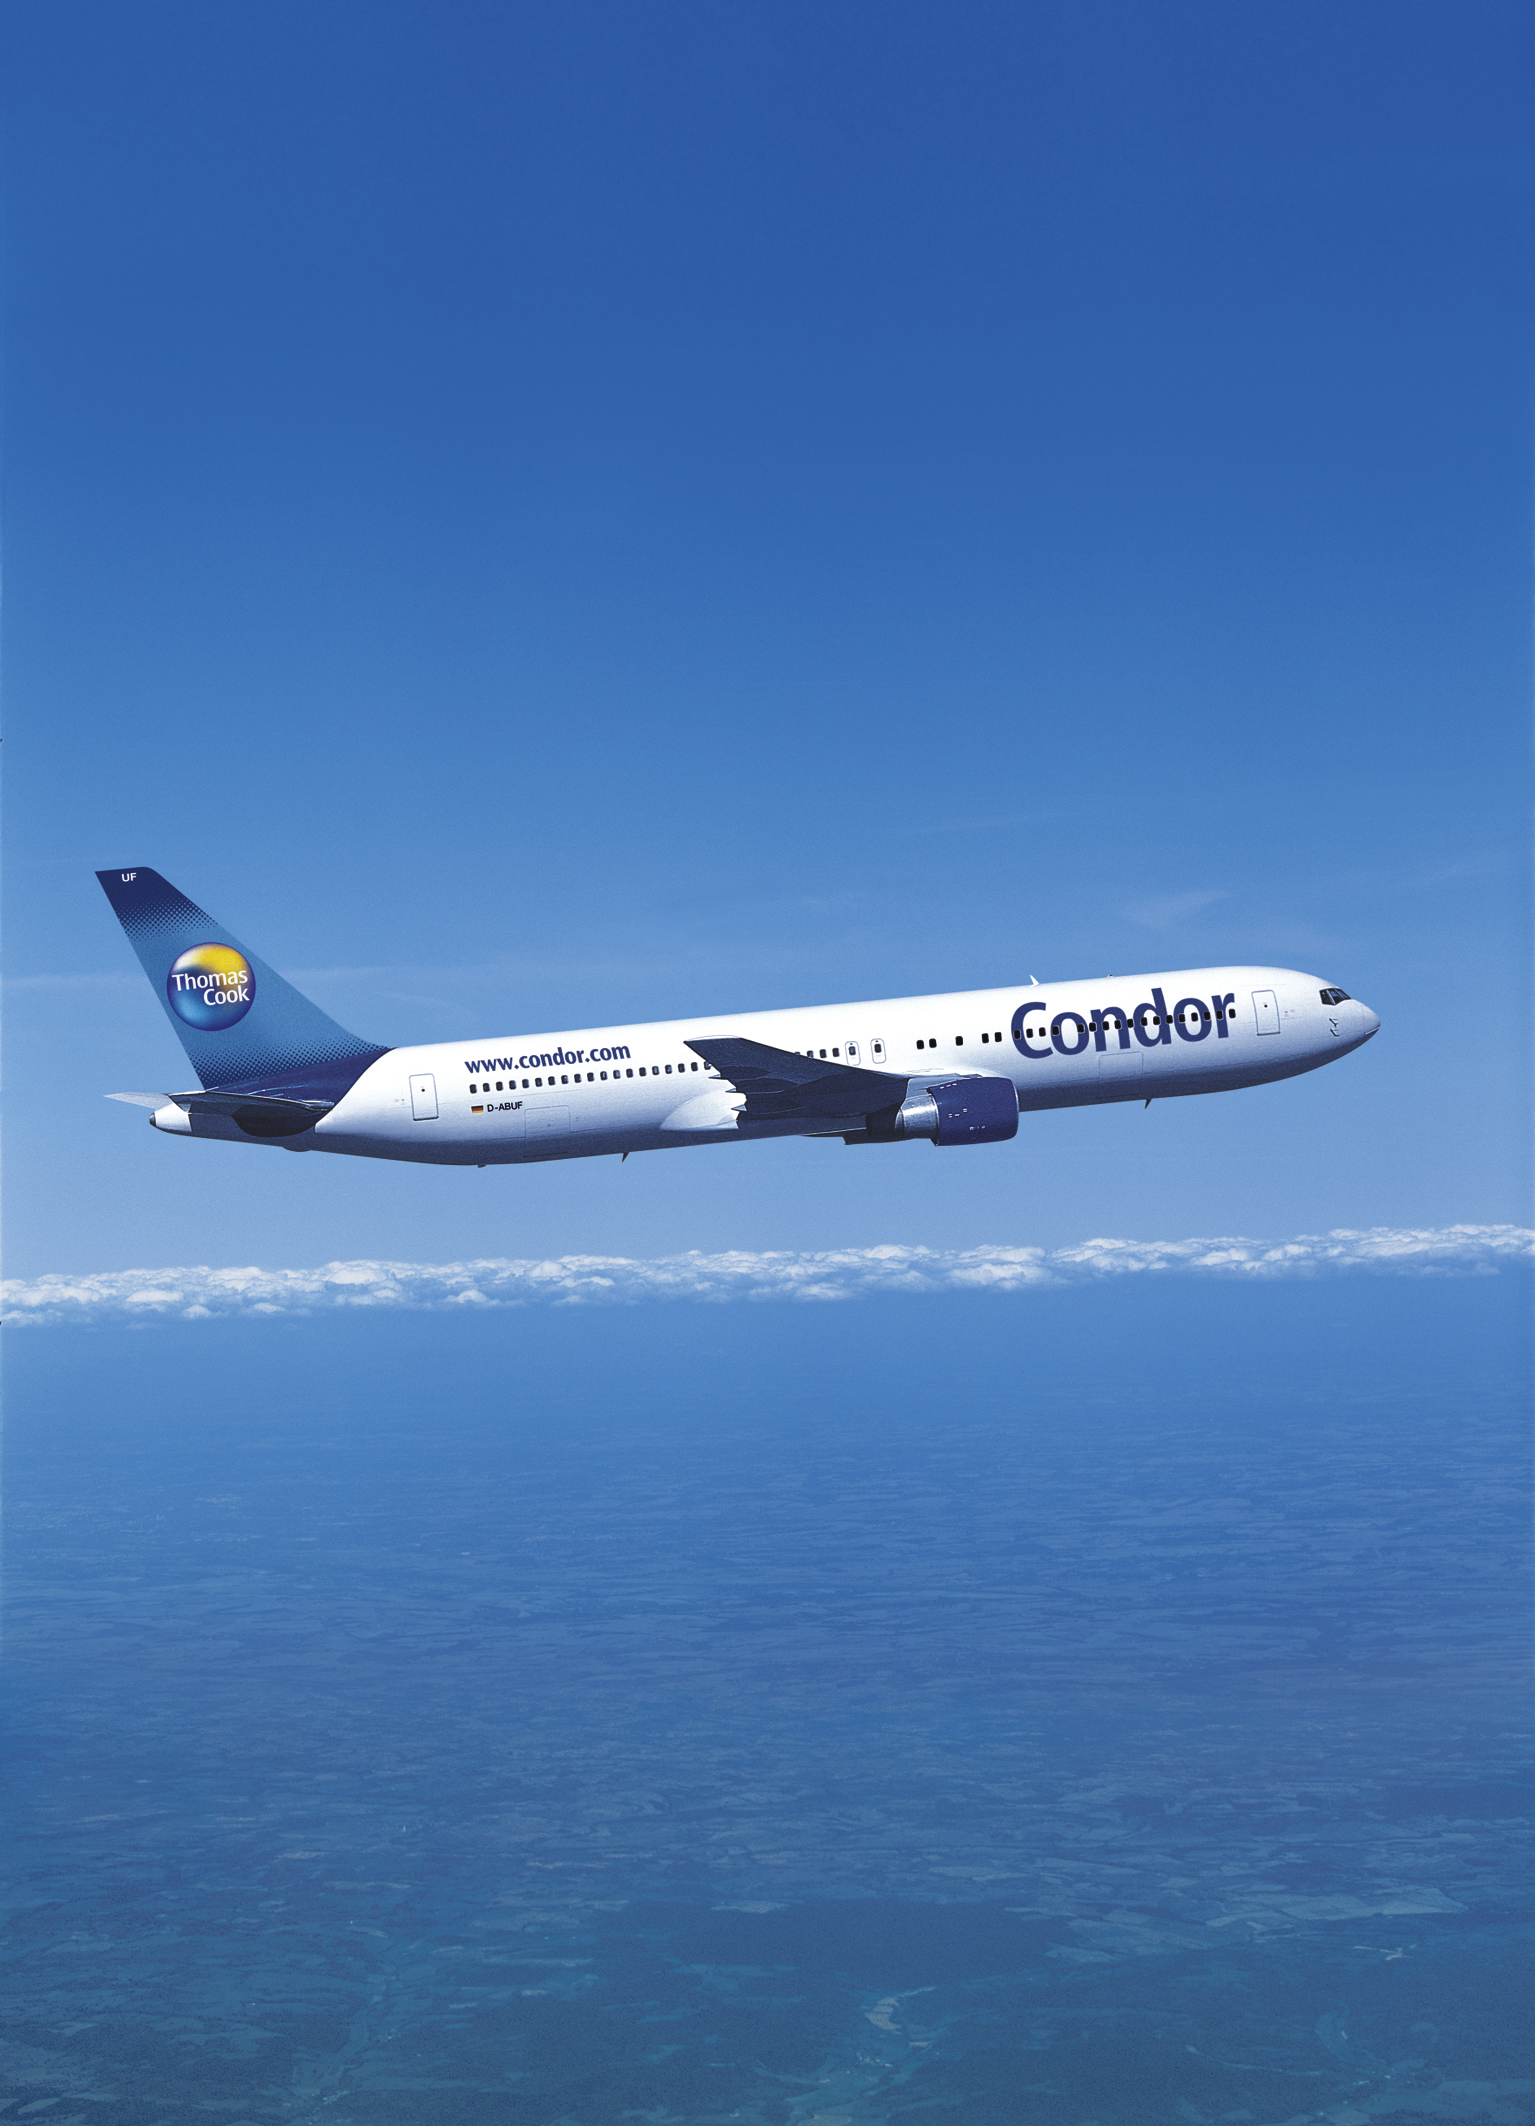 Condor Airlines promozione per le agenzie su tutti i GDS